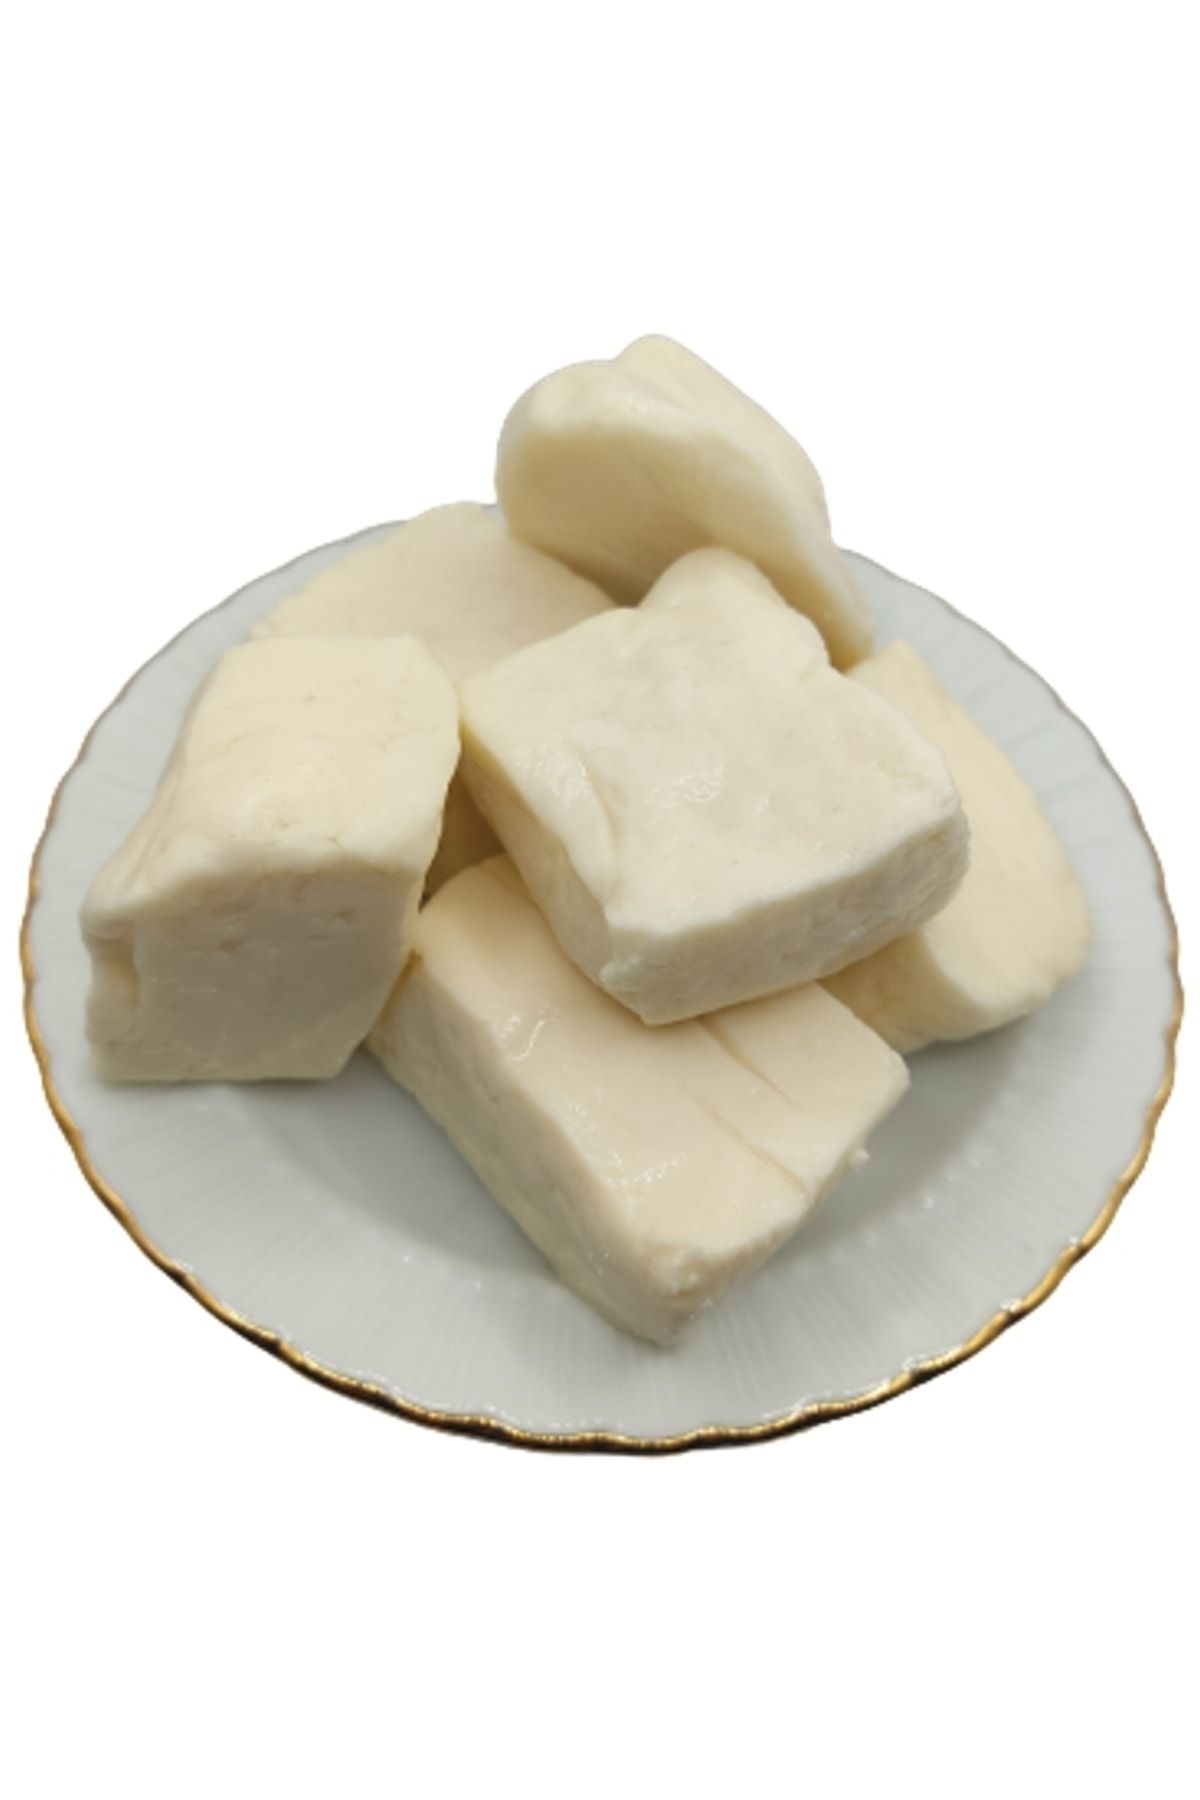 bakkal hasan Tam Yağlı Antep Peyniri (KEÇİ PEYNİRİ) 5 Kg -